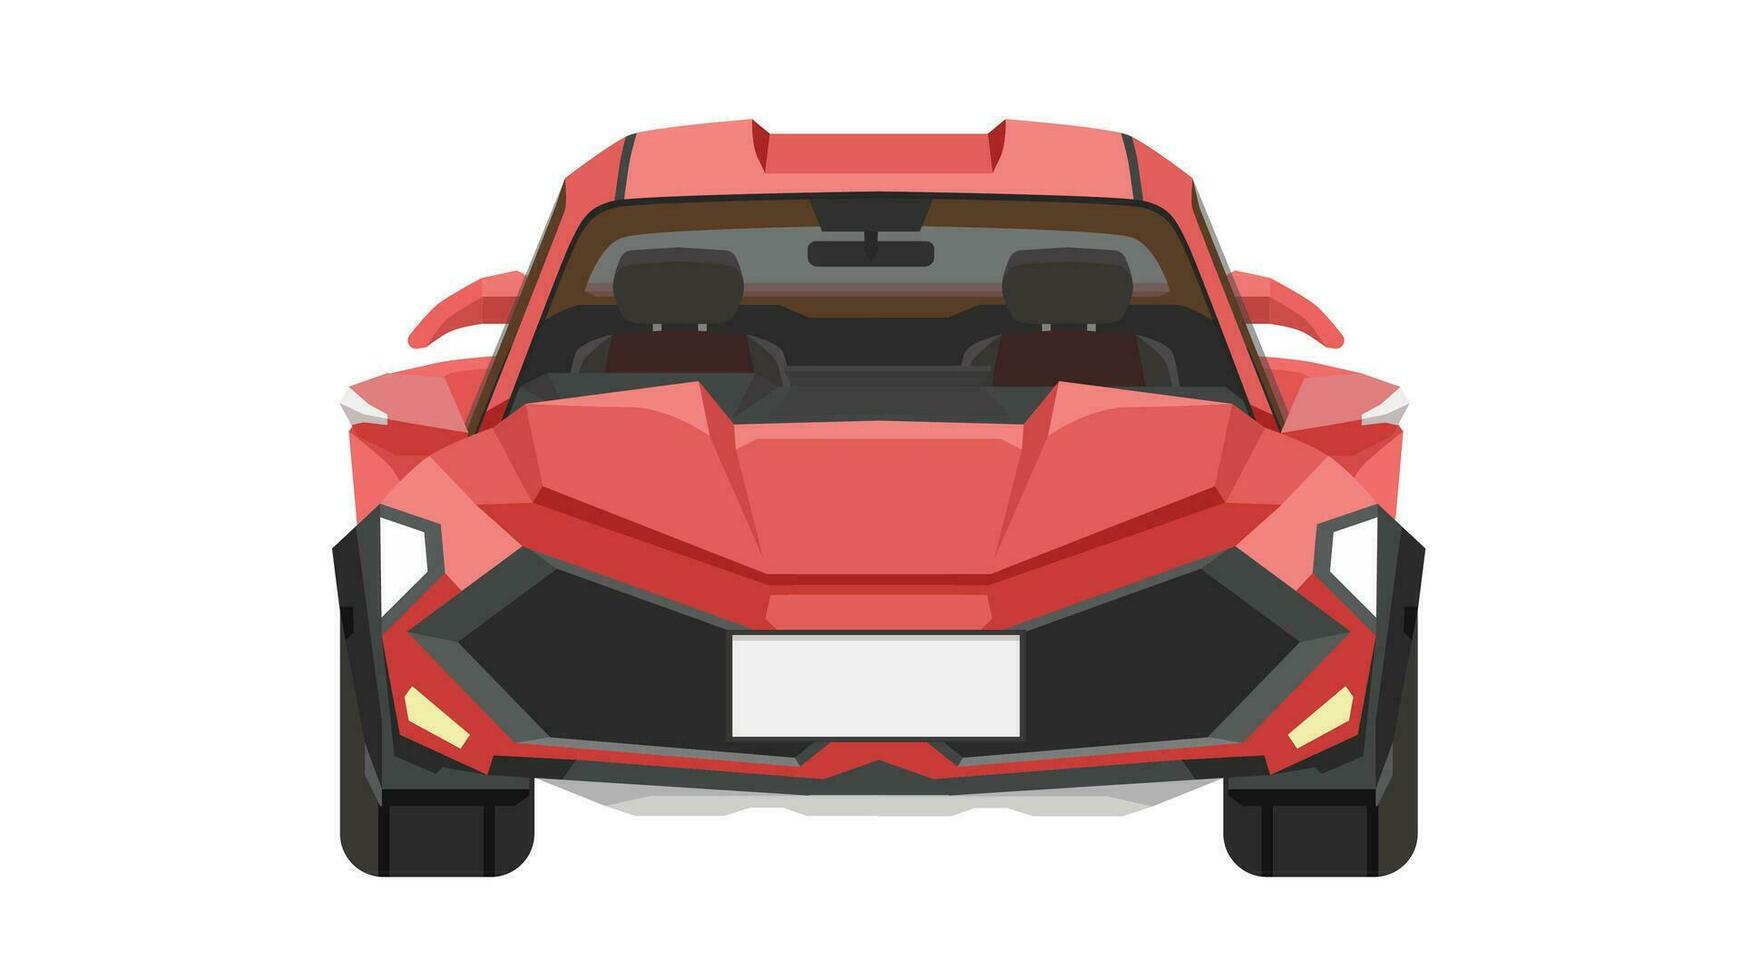 vektor eller illustratör främre se av bil. sport bil röd Färg. separerande de främre och interiör skikten av de bil. isolerat vit bakgrund.